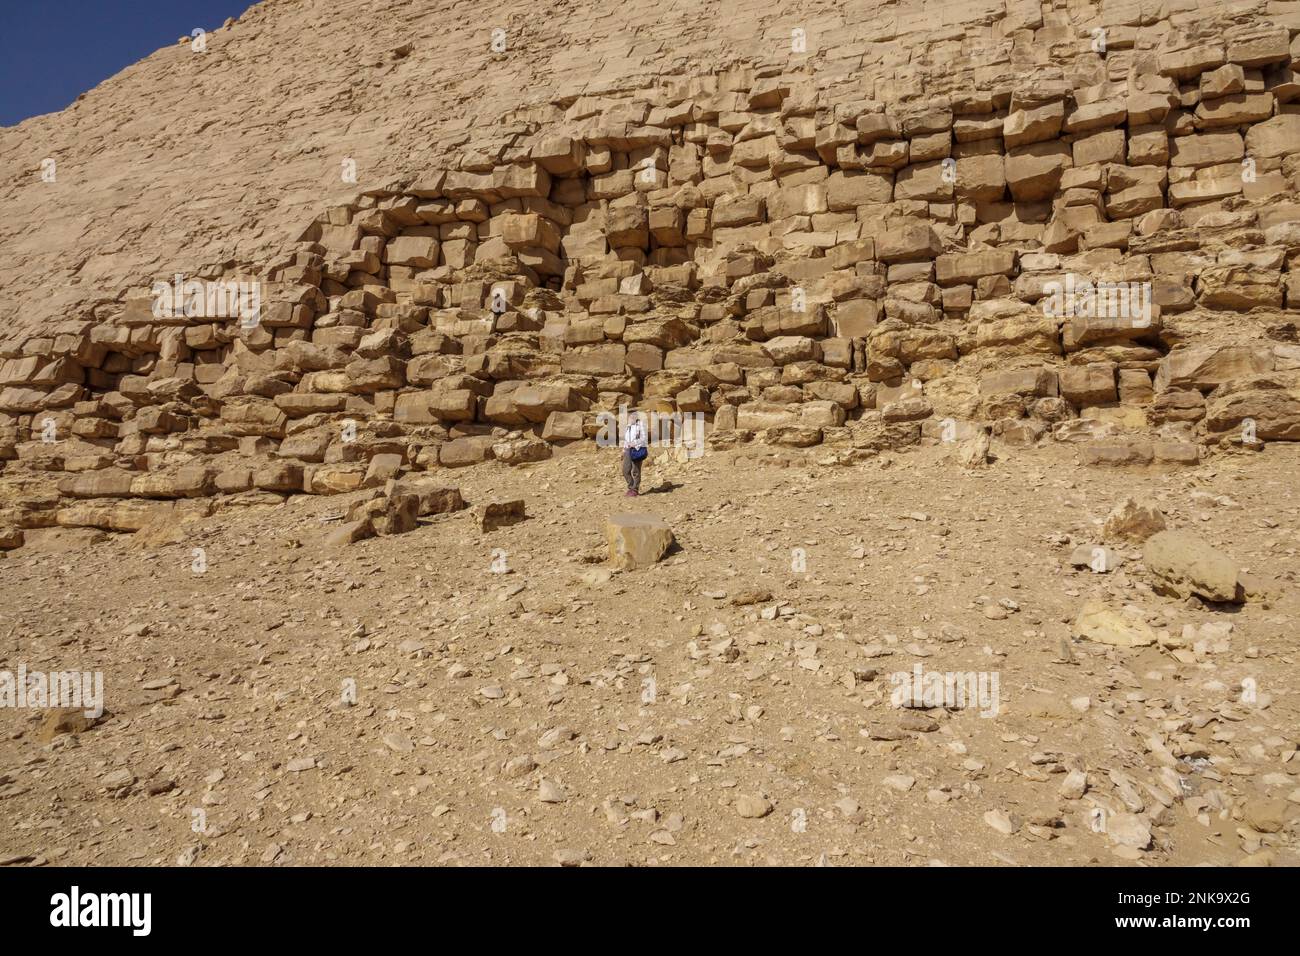 Nahaufnahme der Struktur der Bent Pyramide in Dahschur, Niederägypten Stockfoto